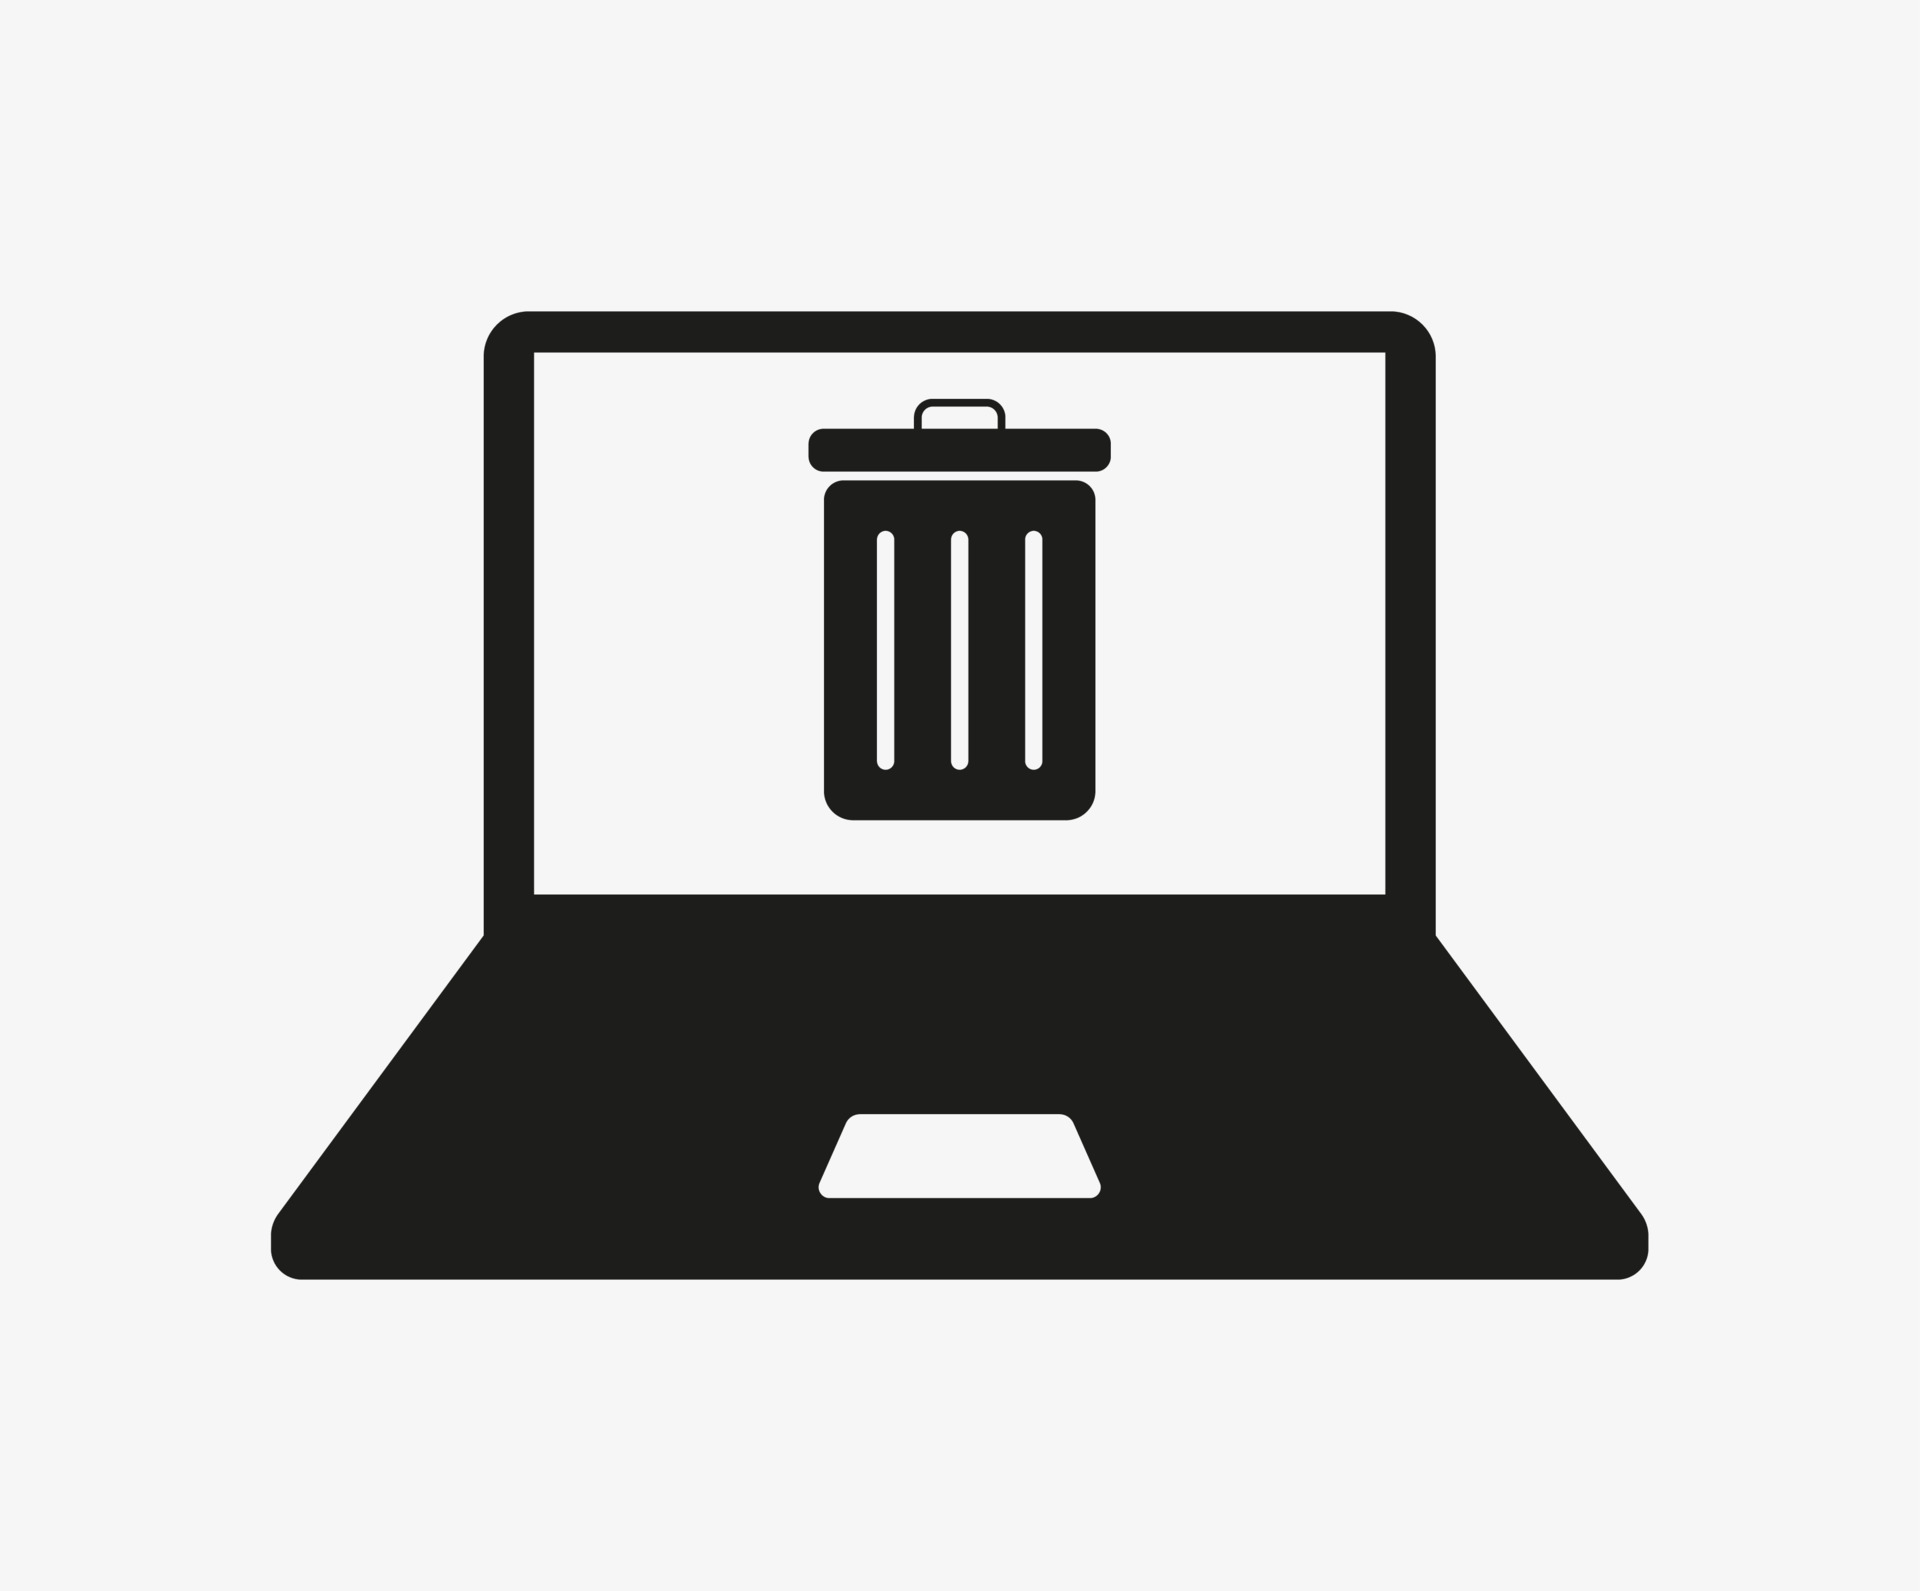 Hãy xem ảnh giúp bạn tìm thấy biểu tượng thùng rác để dọn dẹp cho chiếc laptop của mình. Giờ đây bạn có thể lấy lại không gian lưu trữ và ổn định khối lượng dữ liệu trên máy tính một cách hiệu quả với giải pháp này.